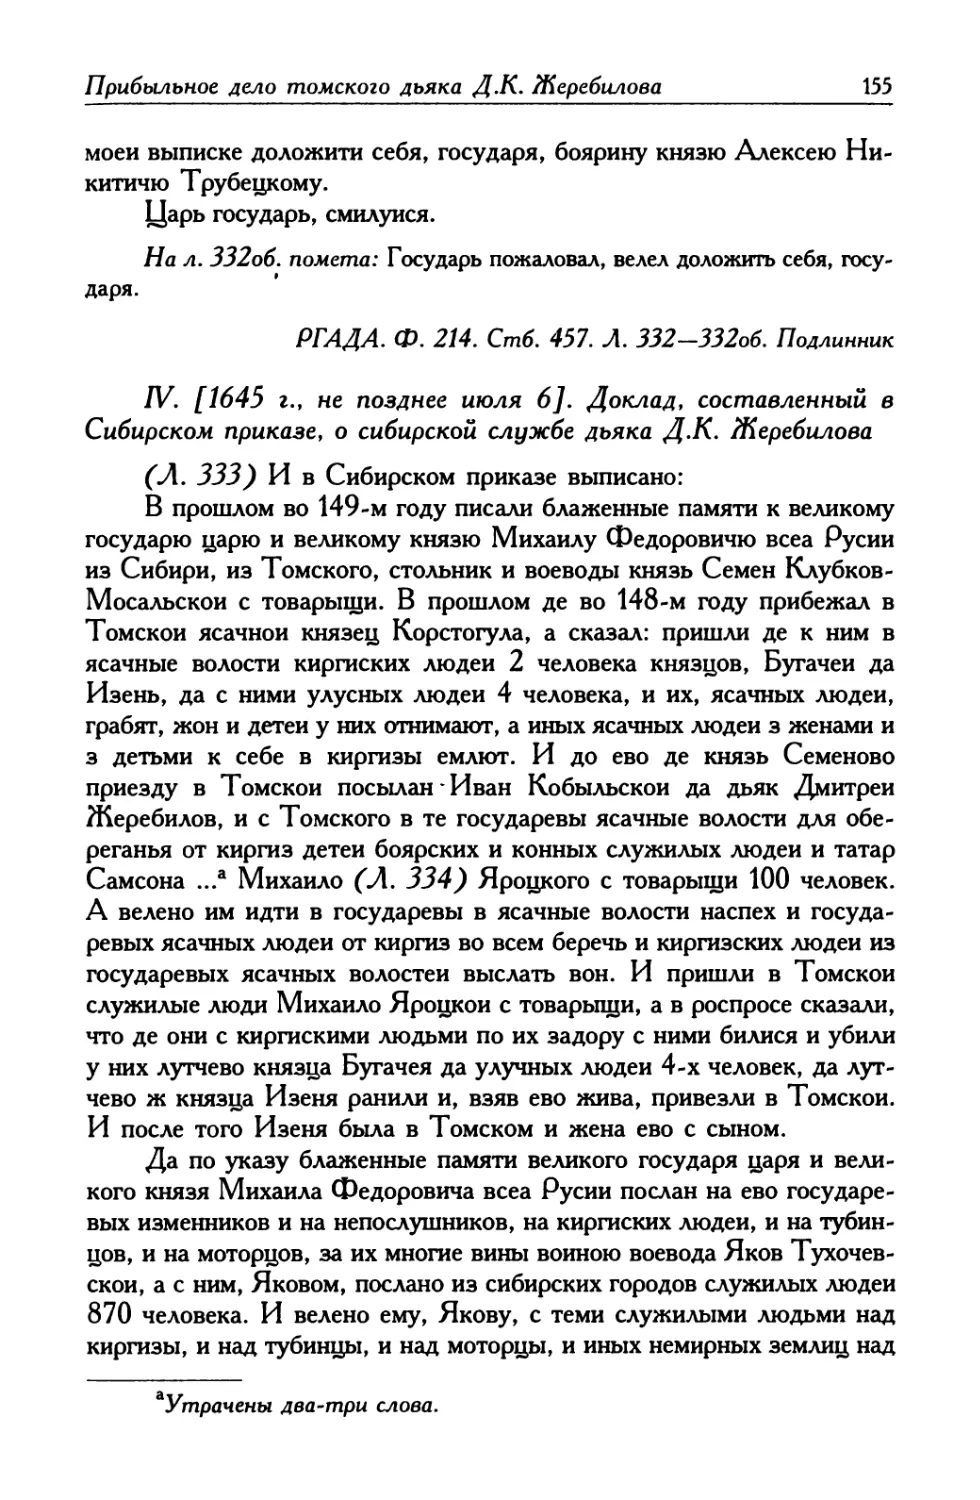 IV. [1645 г., не позднее июля 6]. Доклад, составленный в Сибирском приказе, о сибирской службе дьяка Д. К. Жеребилова